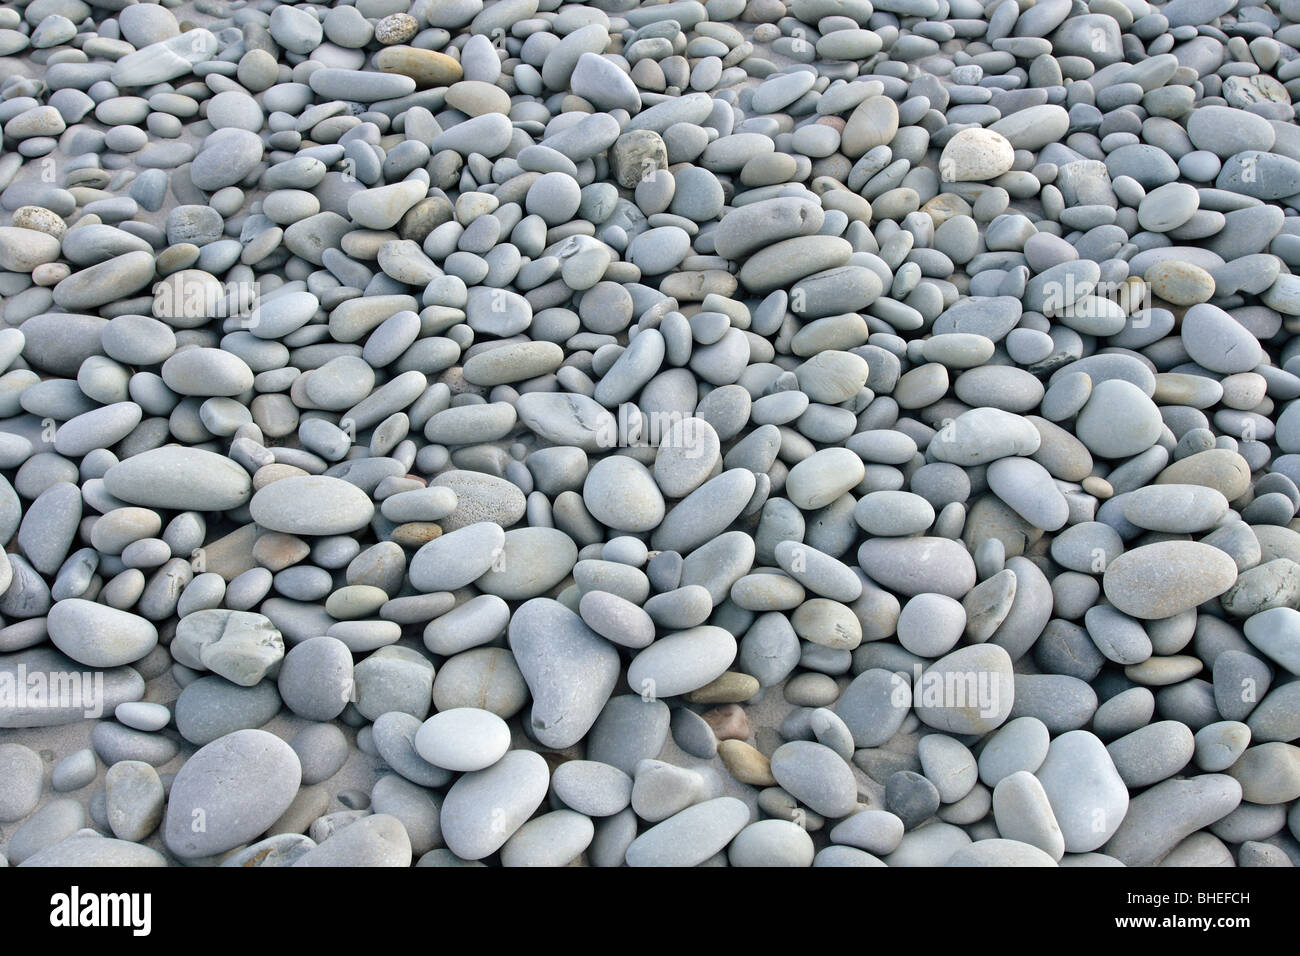 beach rocks or stones on a beach Stock Photo